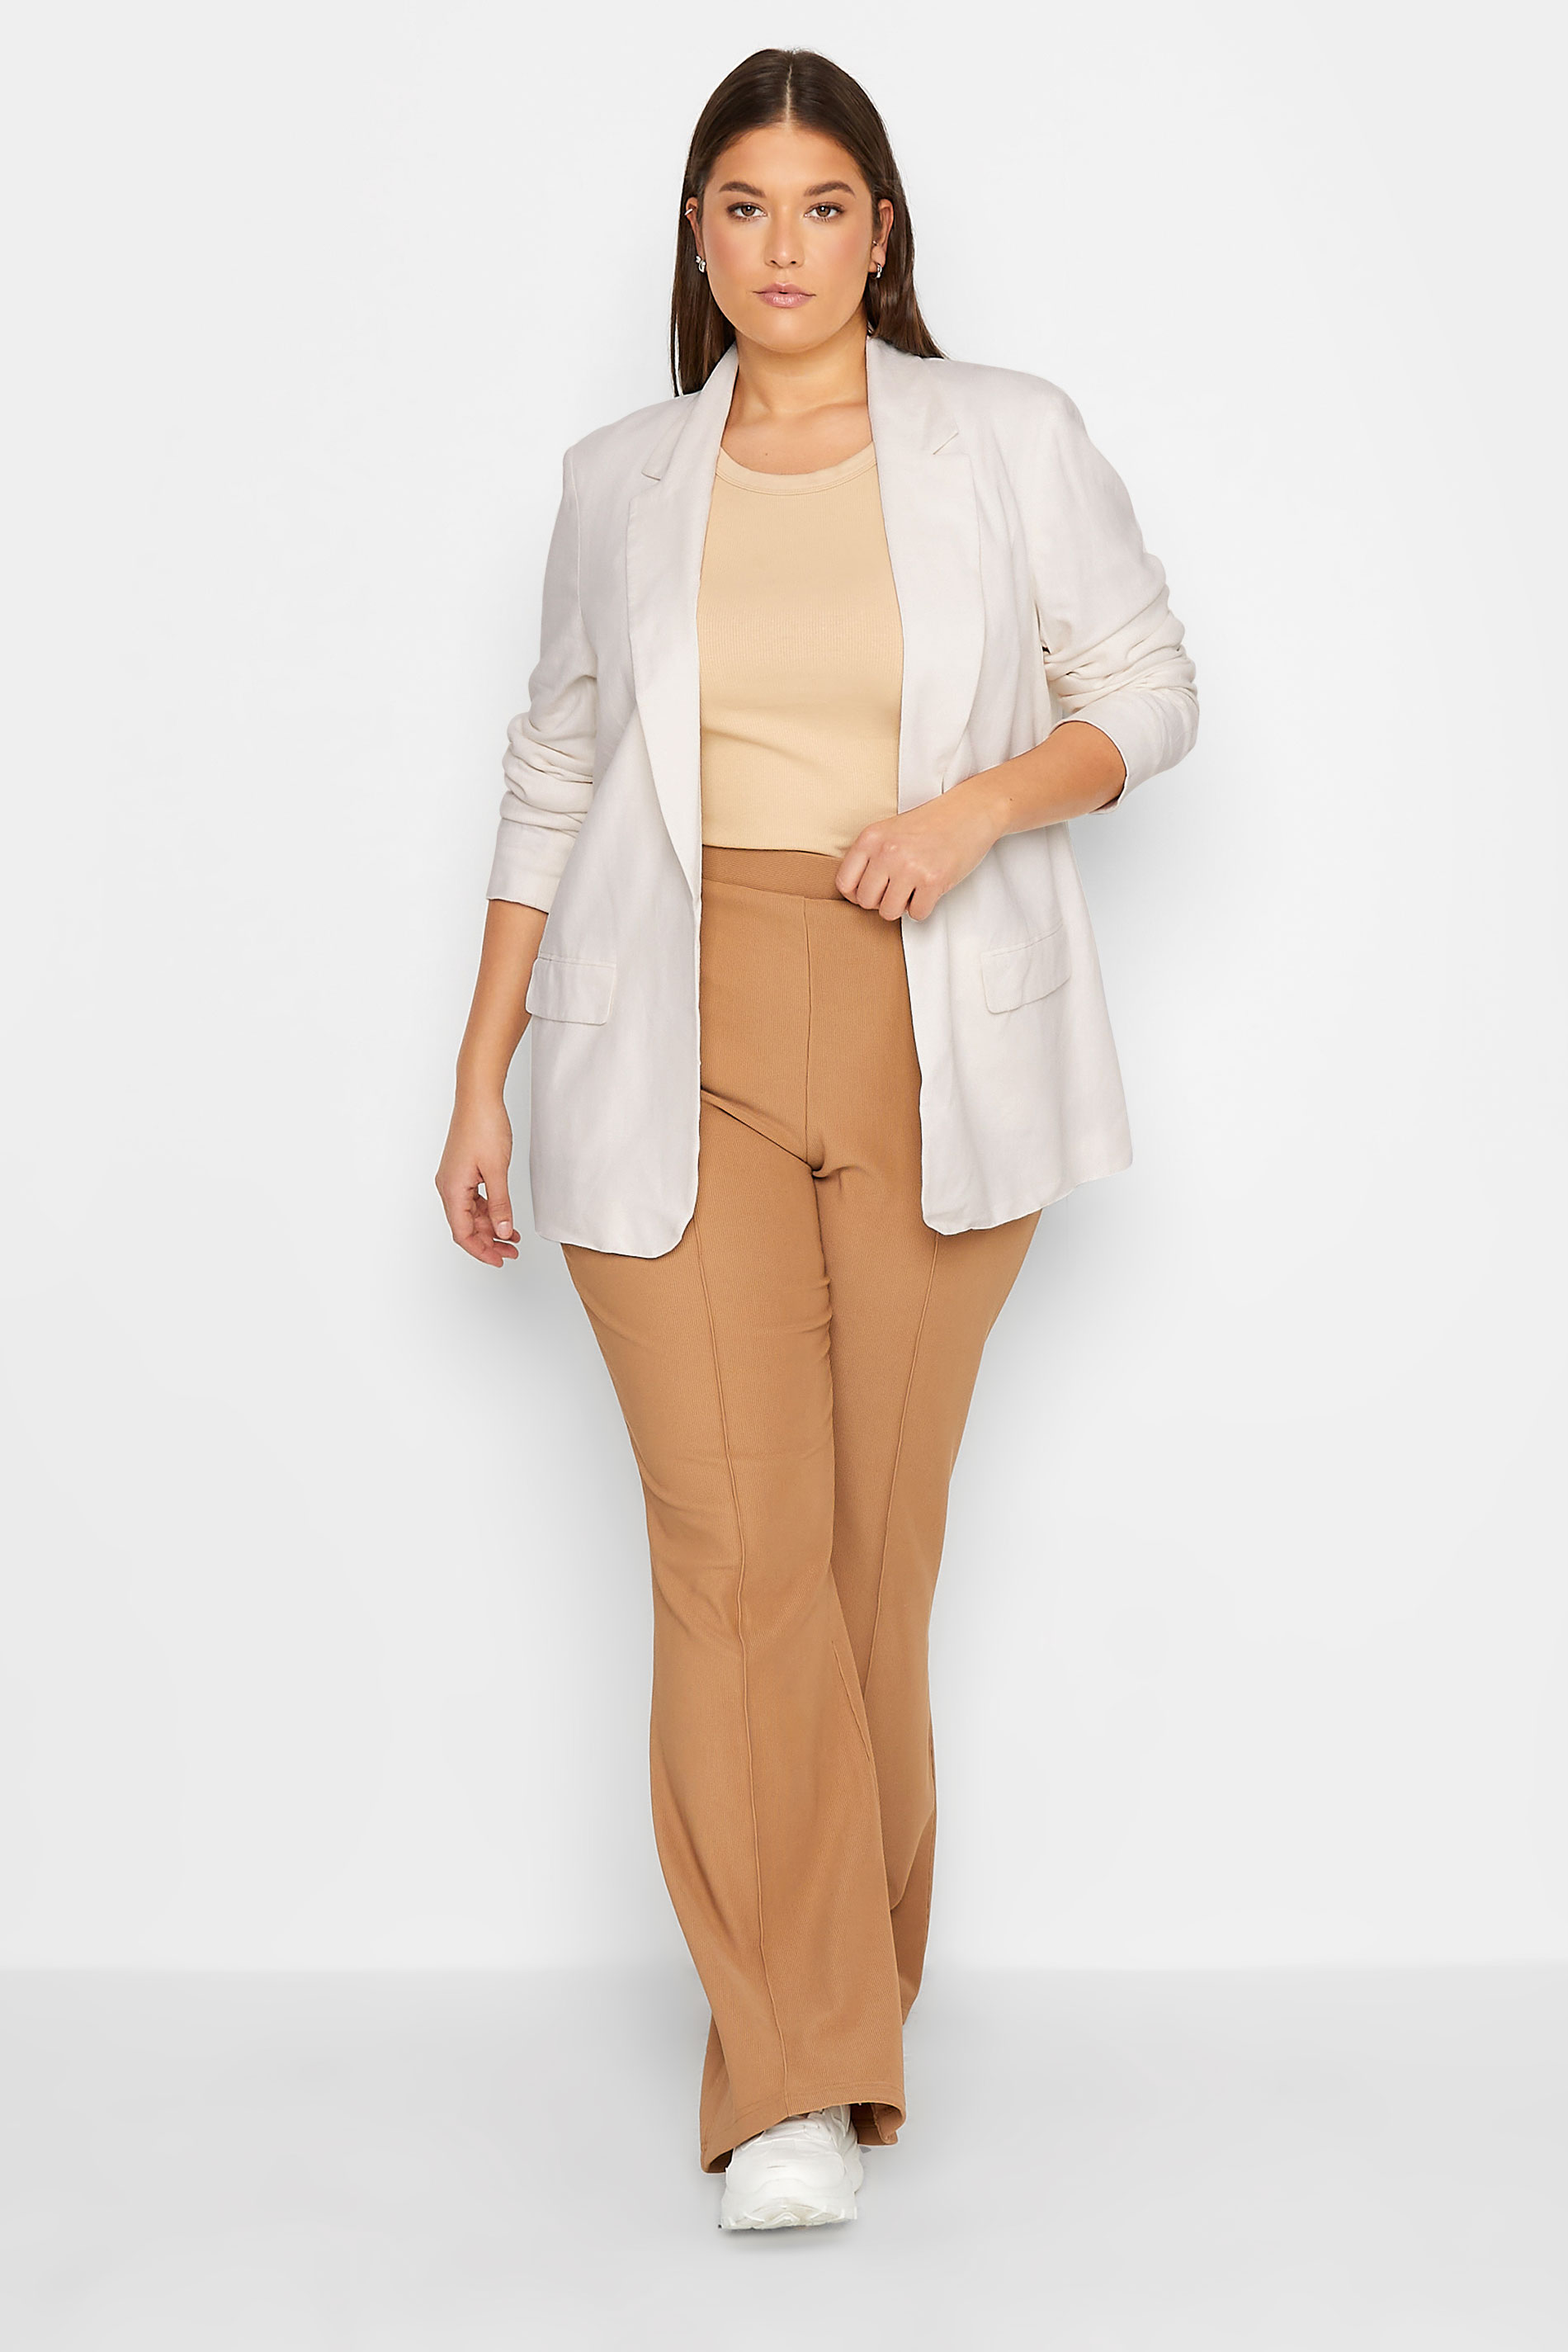 LTS Tall Women's White Linen Look Blazer | Long Tall Sally  2